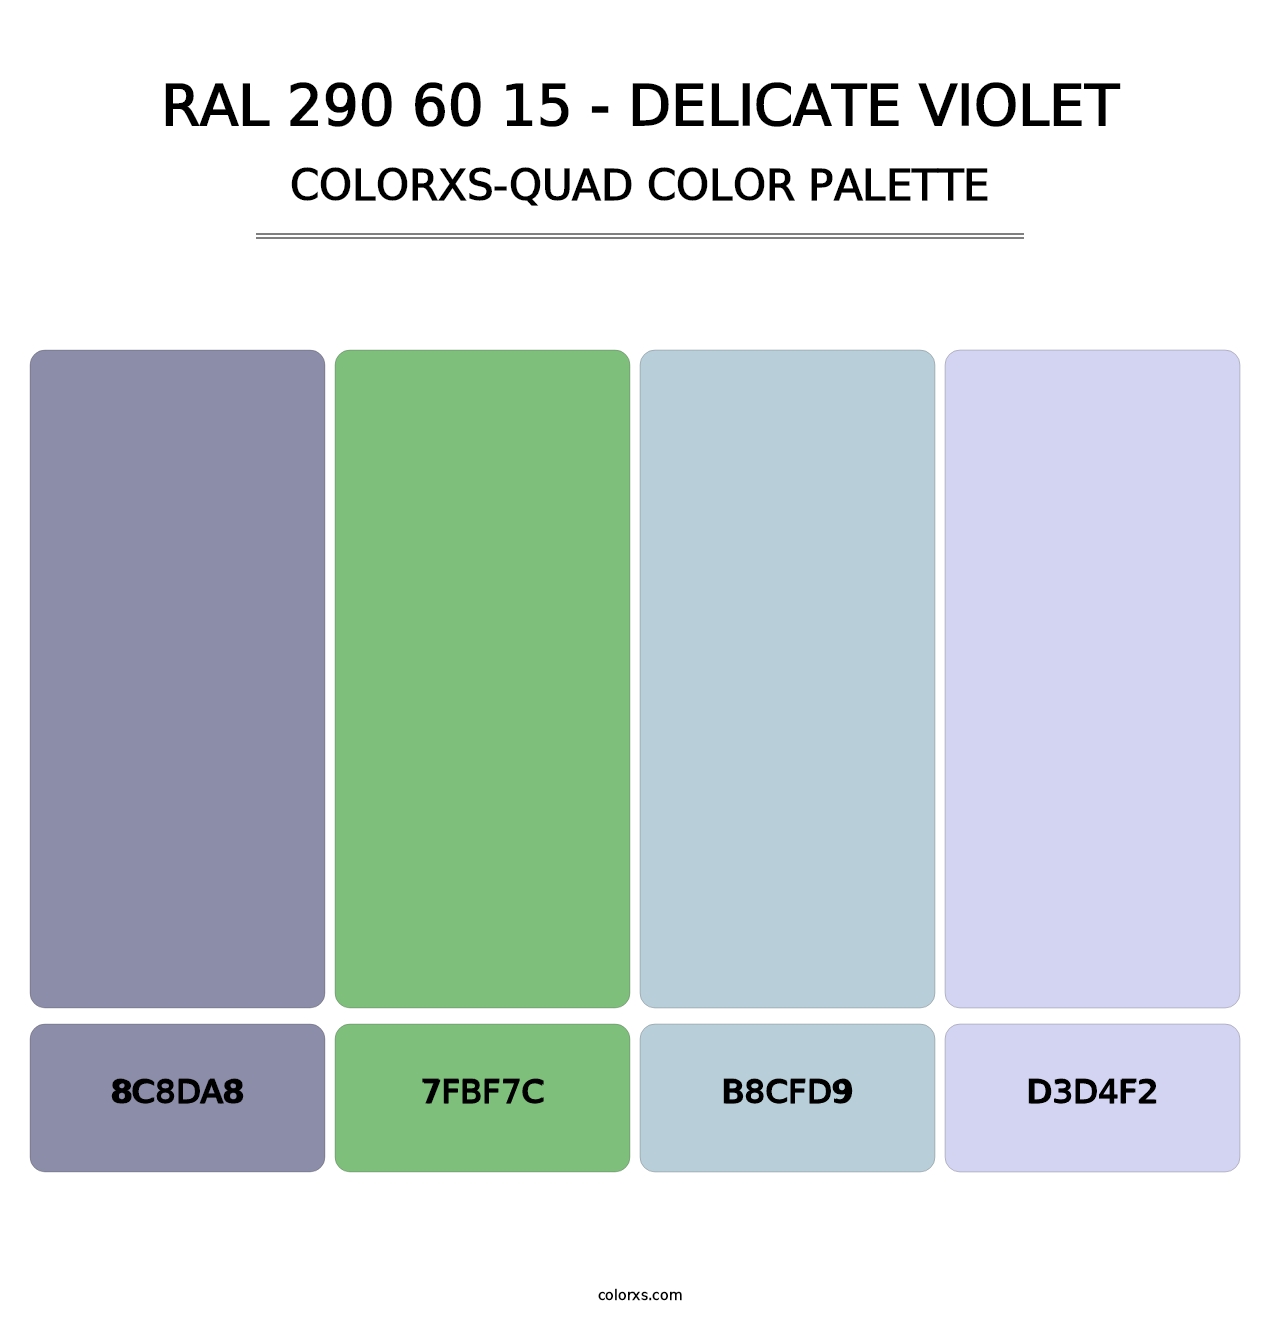 RAL 290 60 15 - Delicate Violet - Colorxs Quad Palette